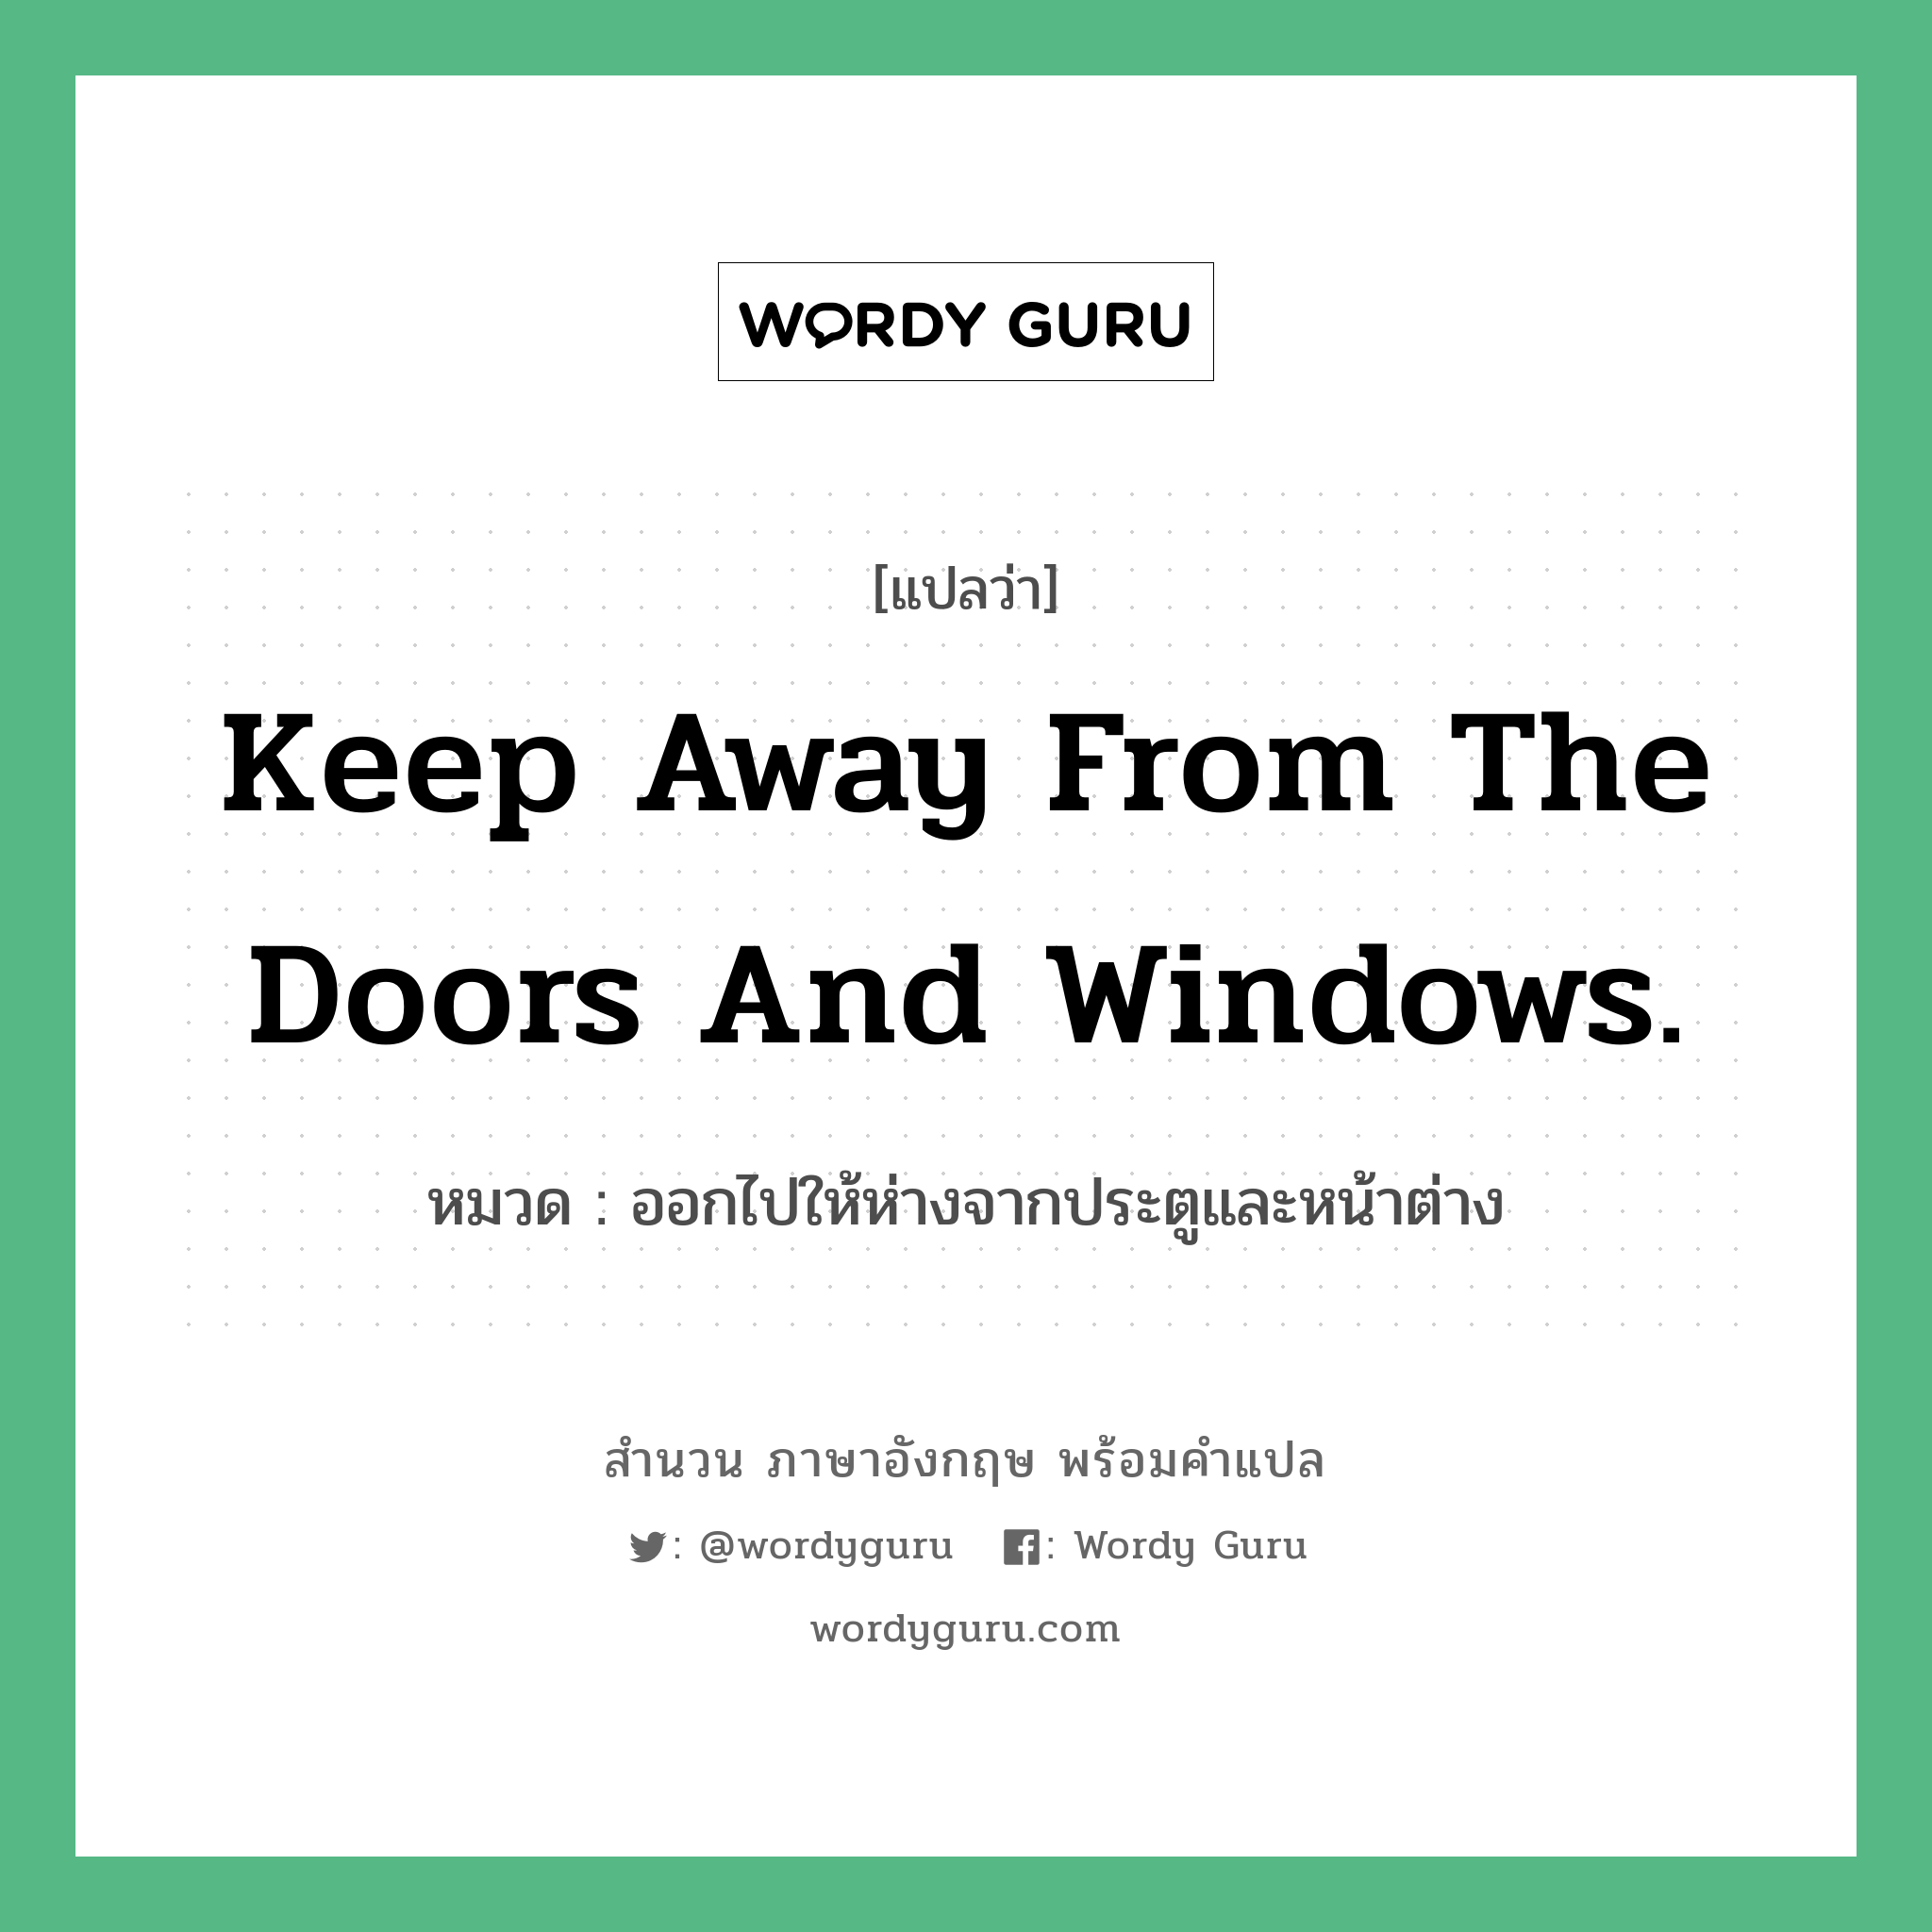 ออกไปให้ห่างจากประตูและหน้าต่าง ภาษาอังกฤษ?, สำนวนภาษาอังกฤษ ออกไปให้ห่างจากประตูและหน้าต่าง แปลว่า ออกไปให้ห่างจากประตูและหน้าต่าง หมวด Keep away from the doors and windows.